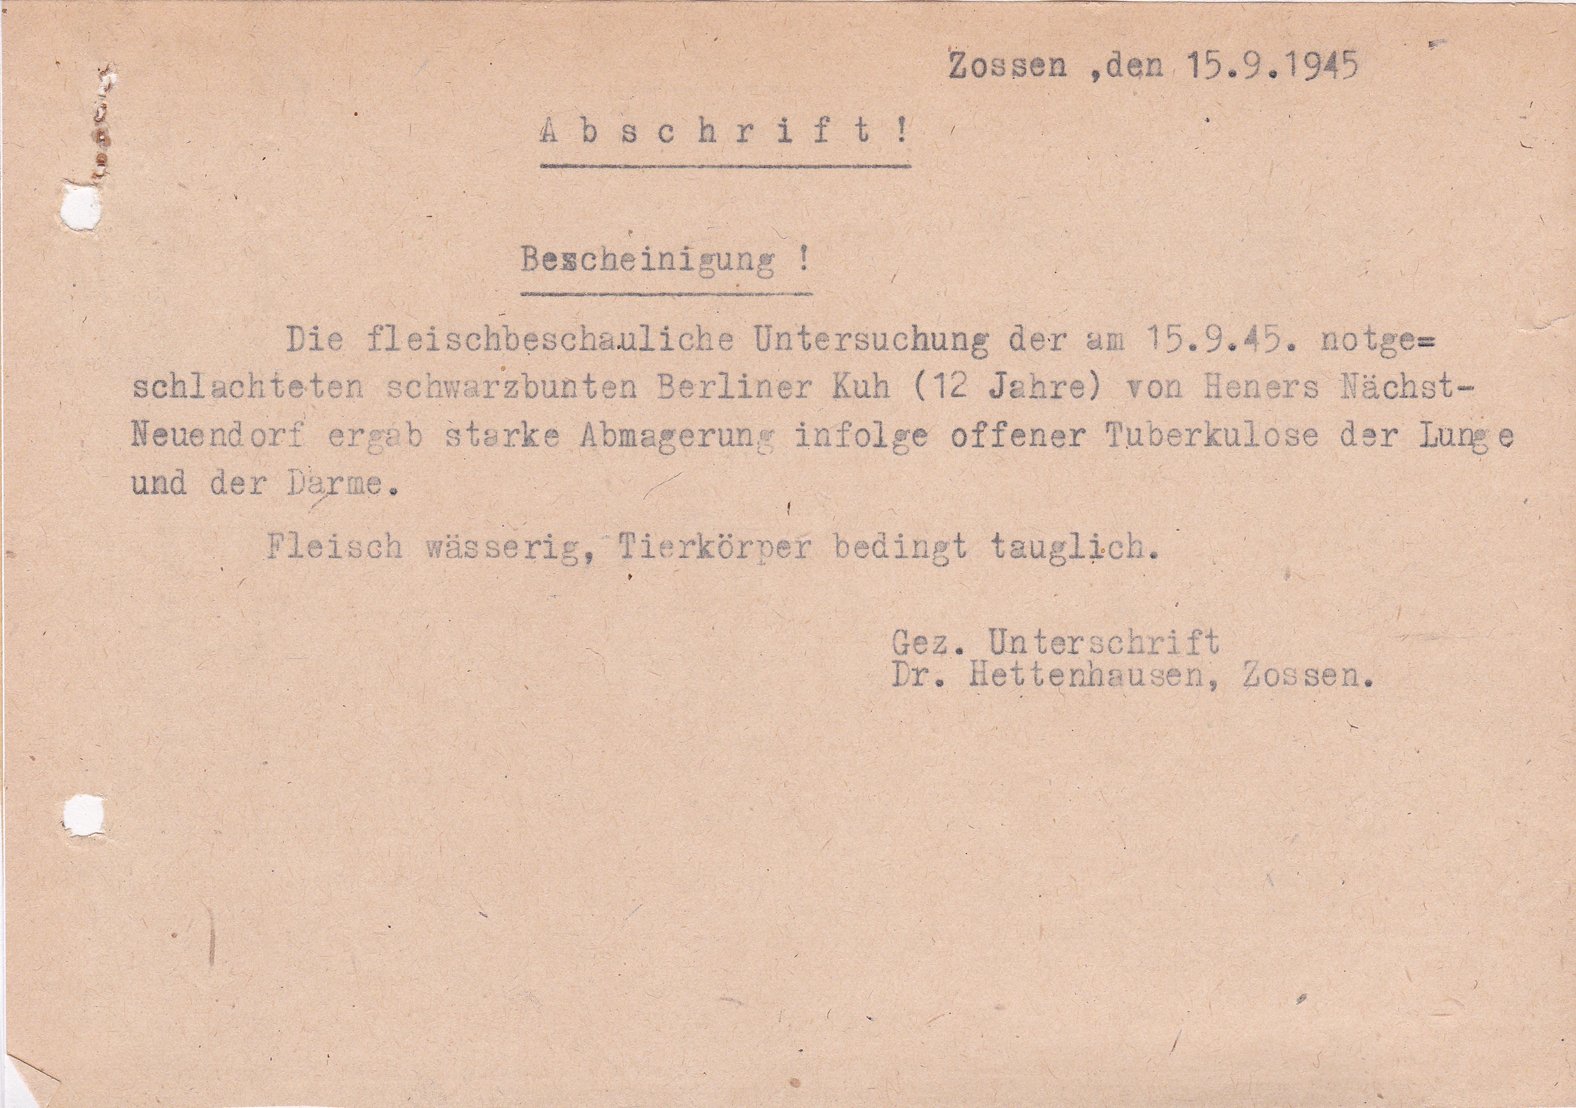 Dr. Hettinghausen, 15.09.1945 (Heimatverein "Alter Krug" Zossen e.V. CC BY-NC-SA)